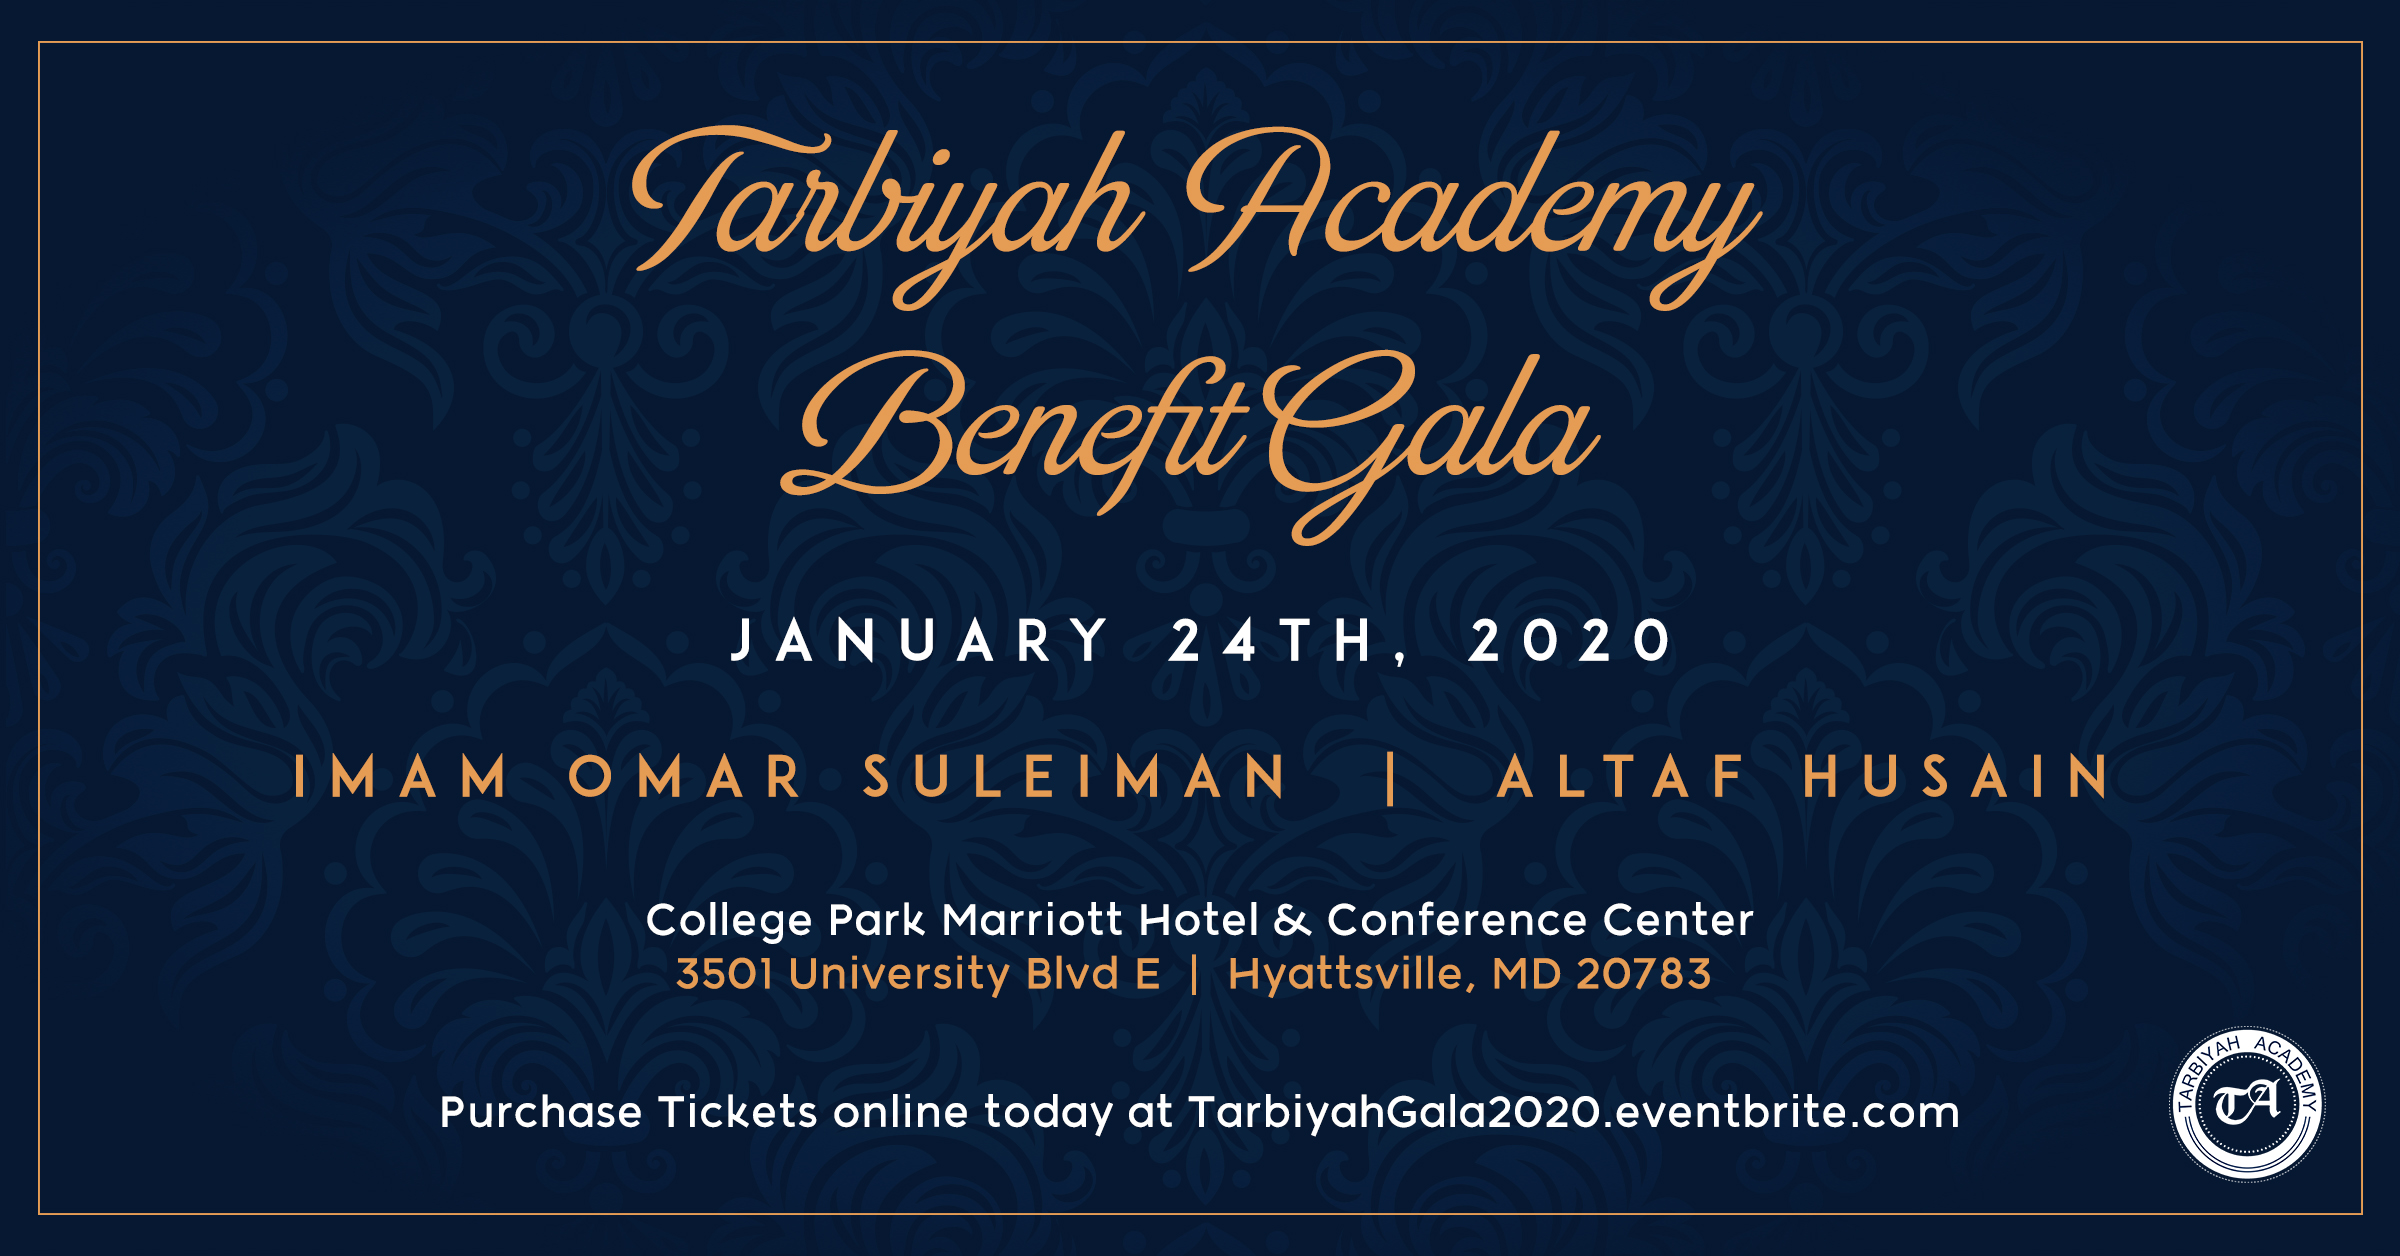 Tarbiyah Academy Benefit Gala - January 24, 2020